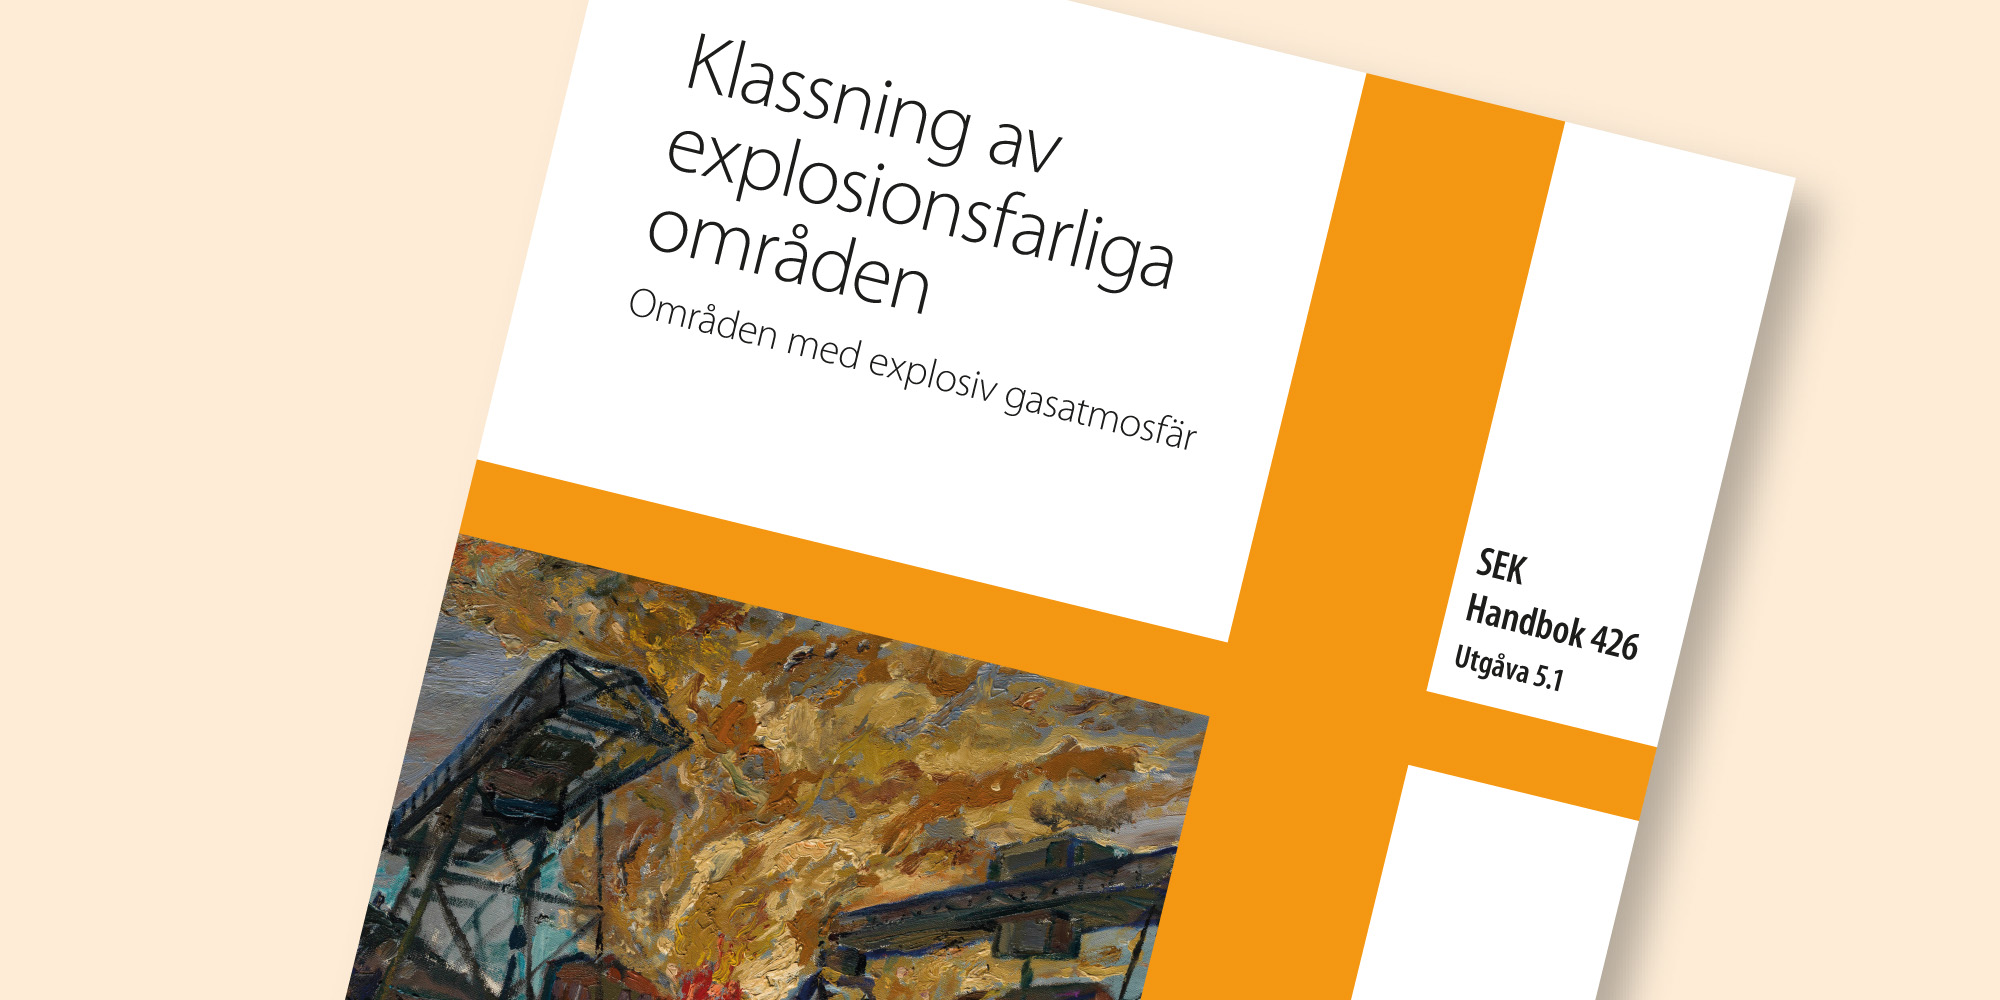 Klassning av explosionsfarliga områden - Områden med explosiv gasatmosfär SEK Handbok 426